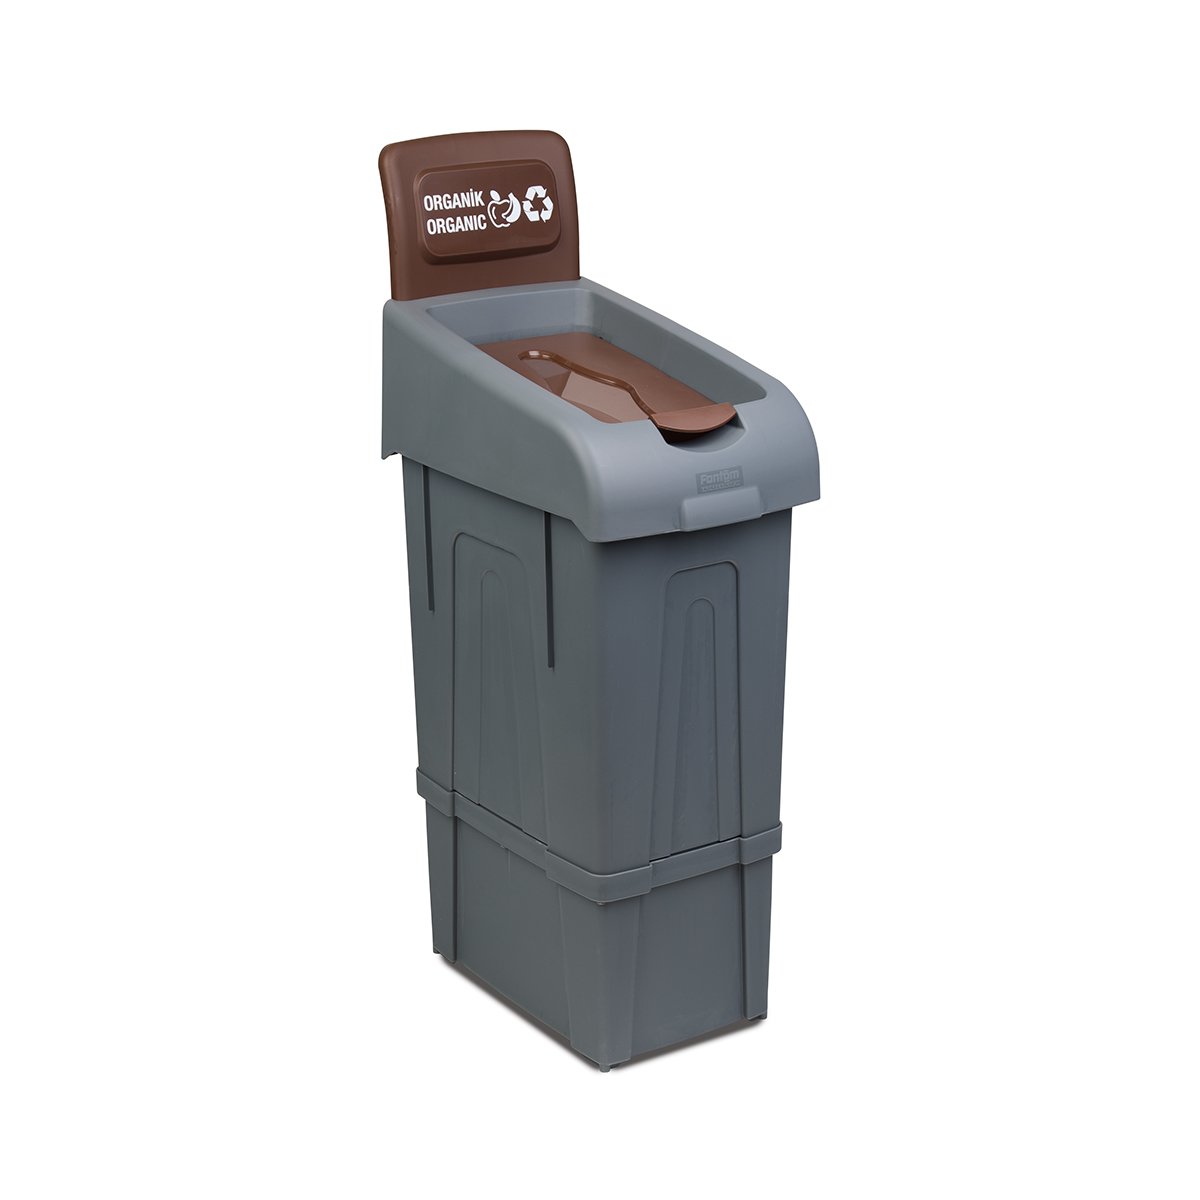 Abfalleimer Mülltrennsystem Biomüll | 80 Liter HxBxT 105x34x55cm | Recyclingstation Mülleimer Trennsystem | Grau/Braun